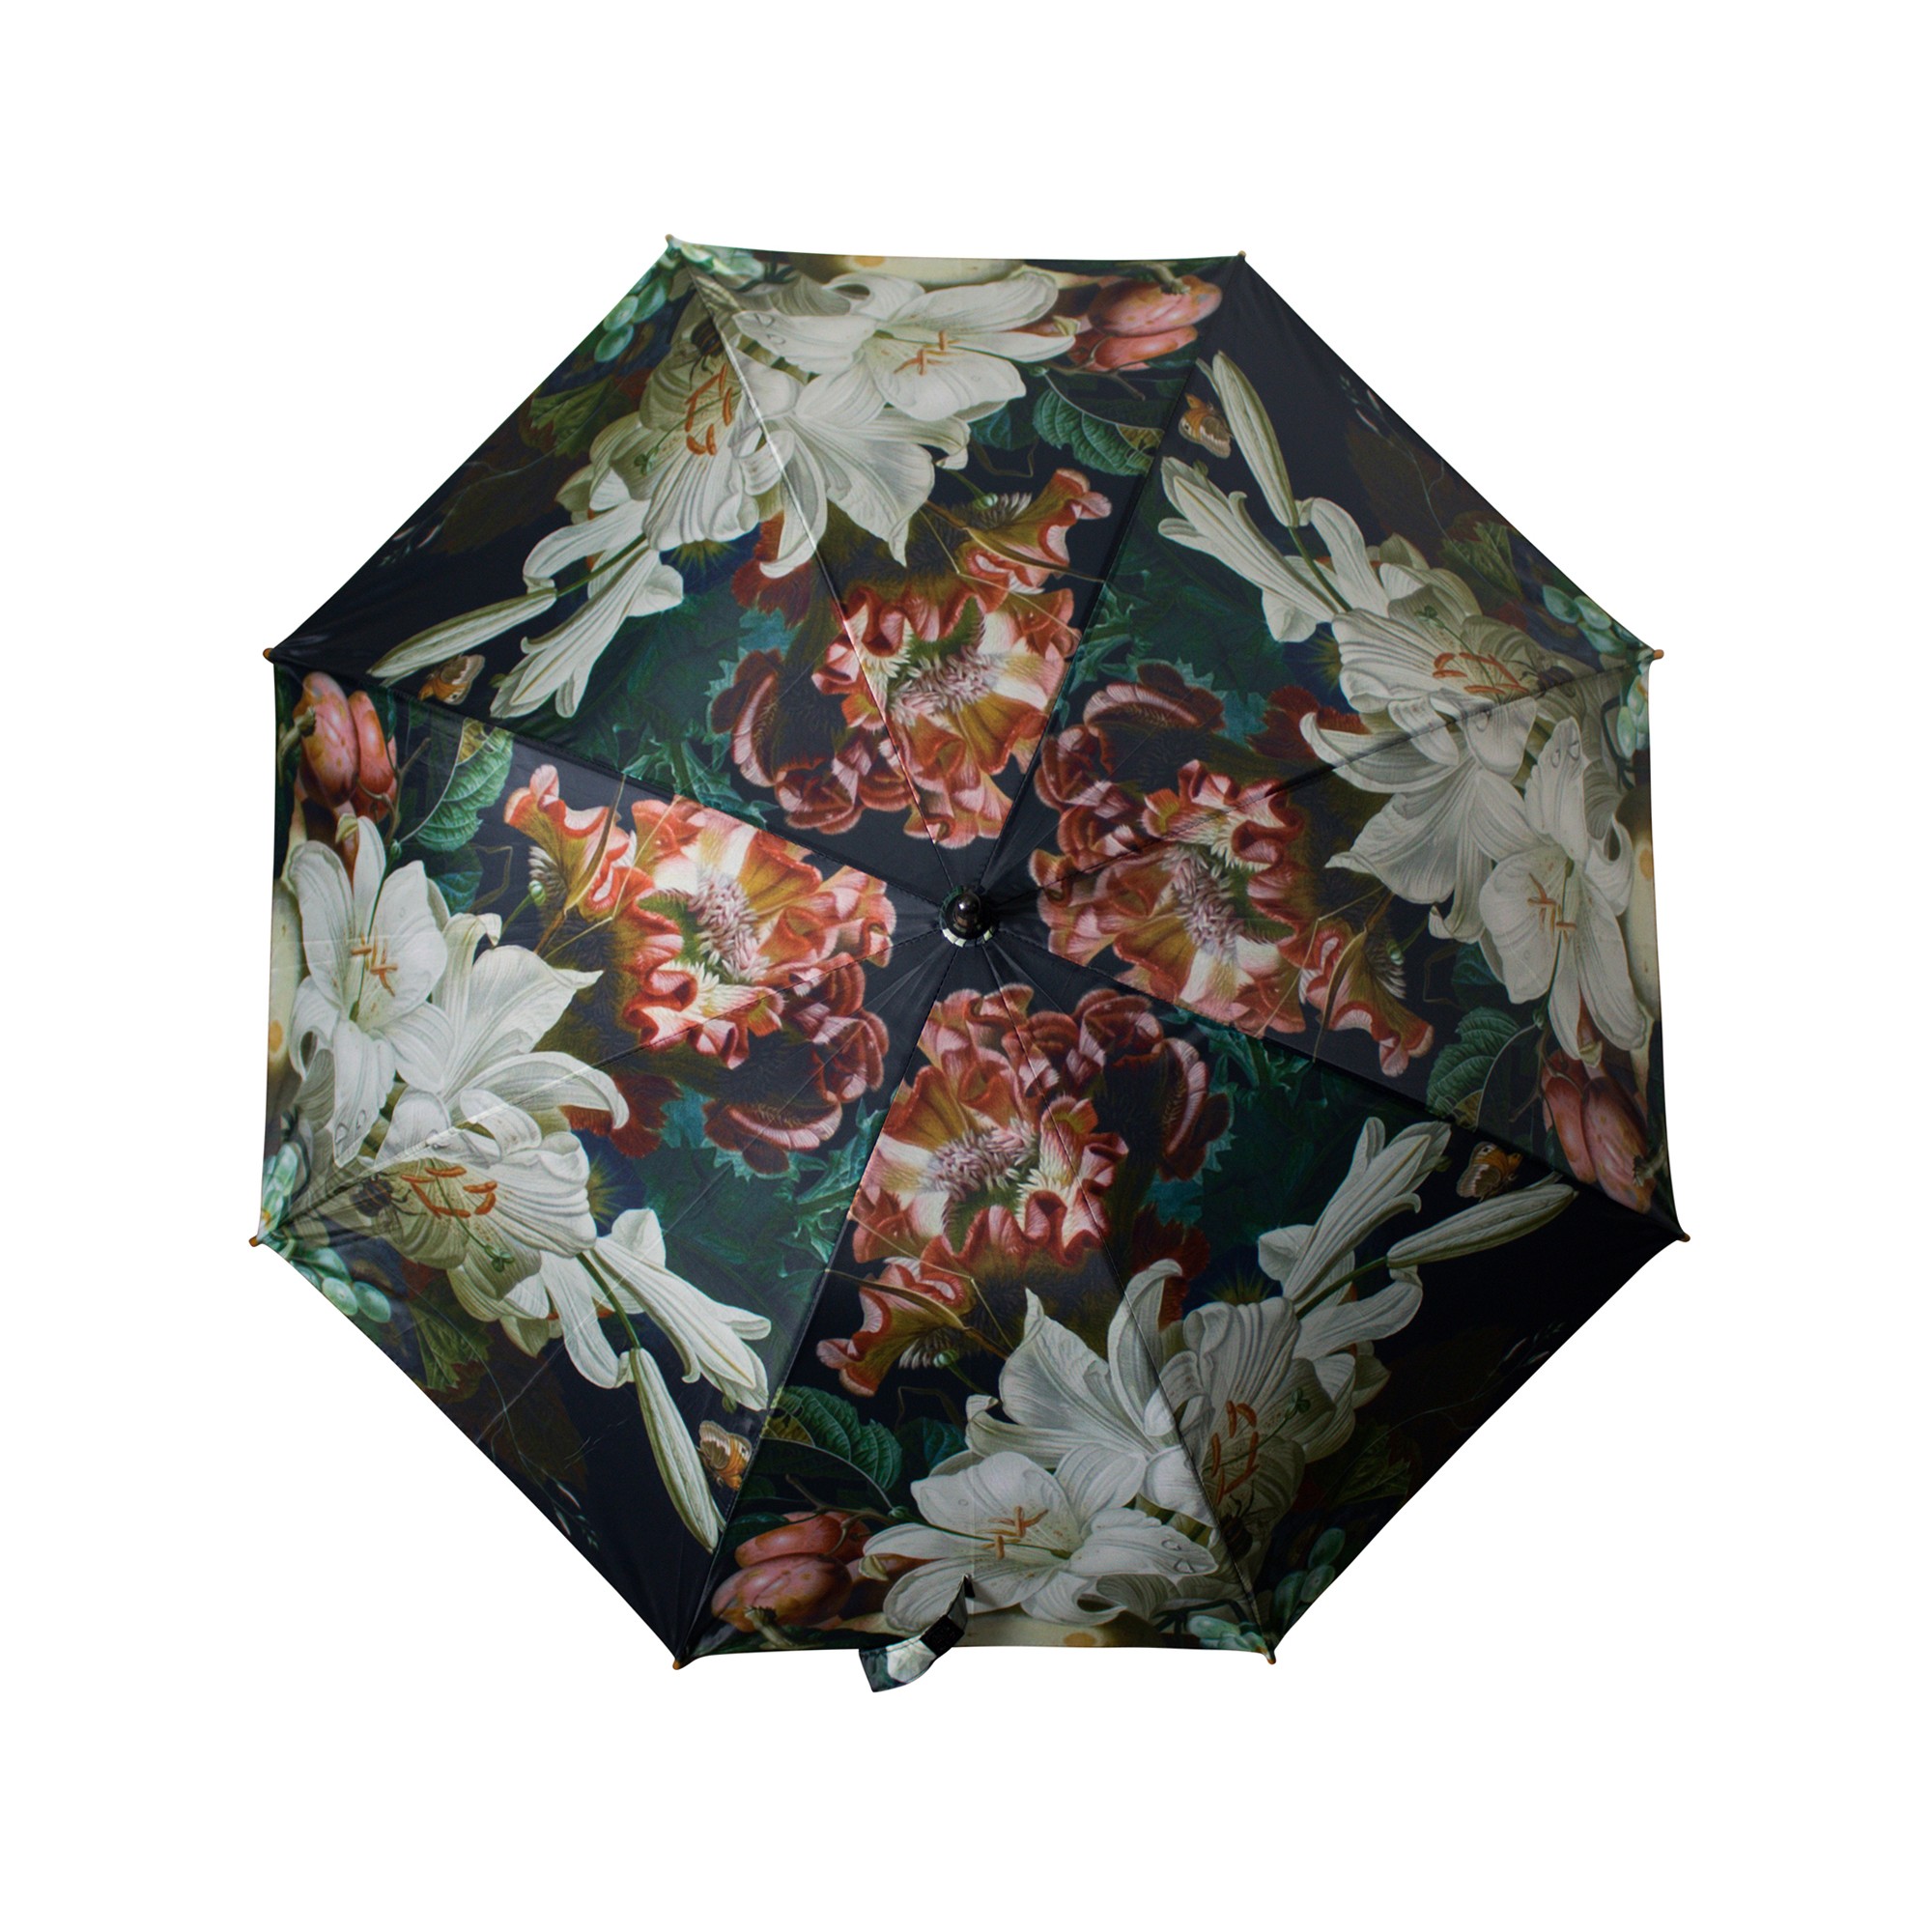 Deštník s květy a ovocem Liliana - 105*105*88cm Mars & More